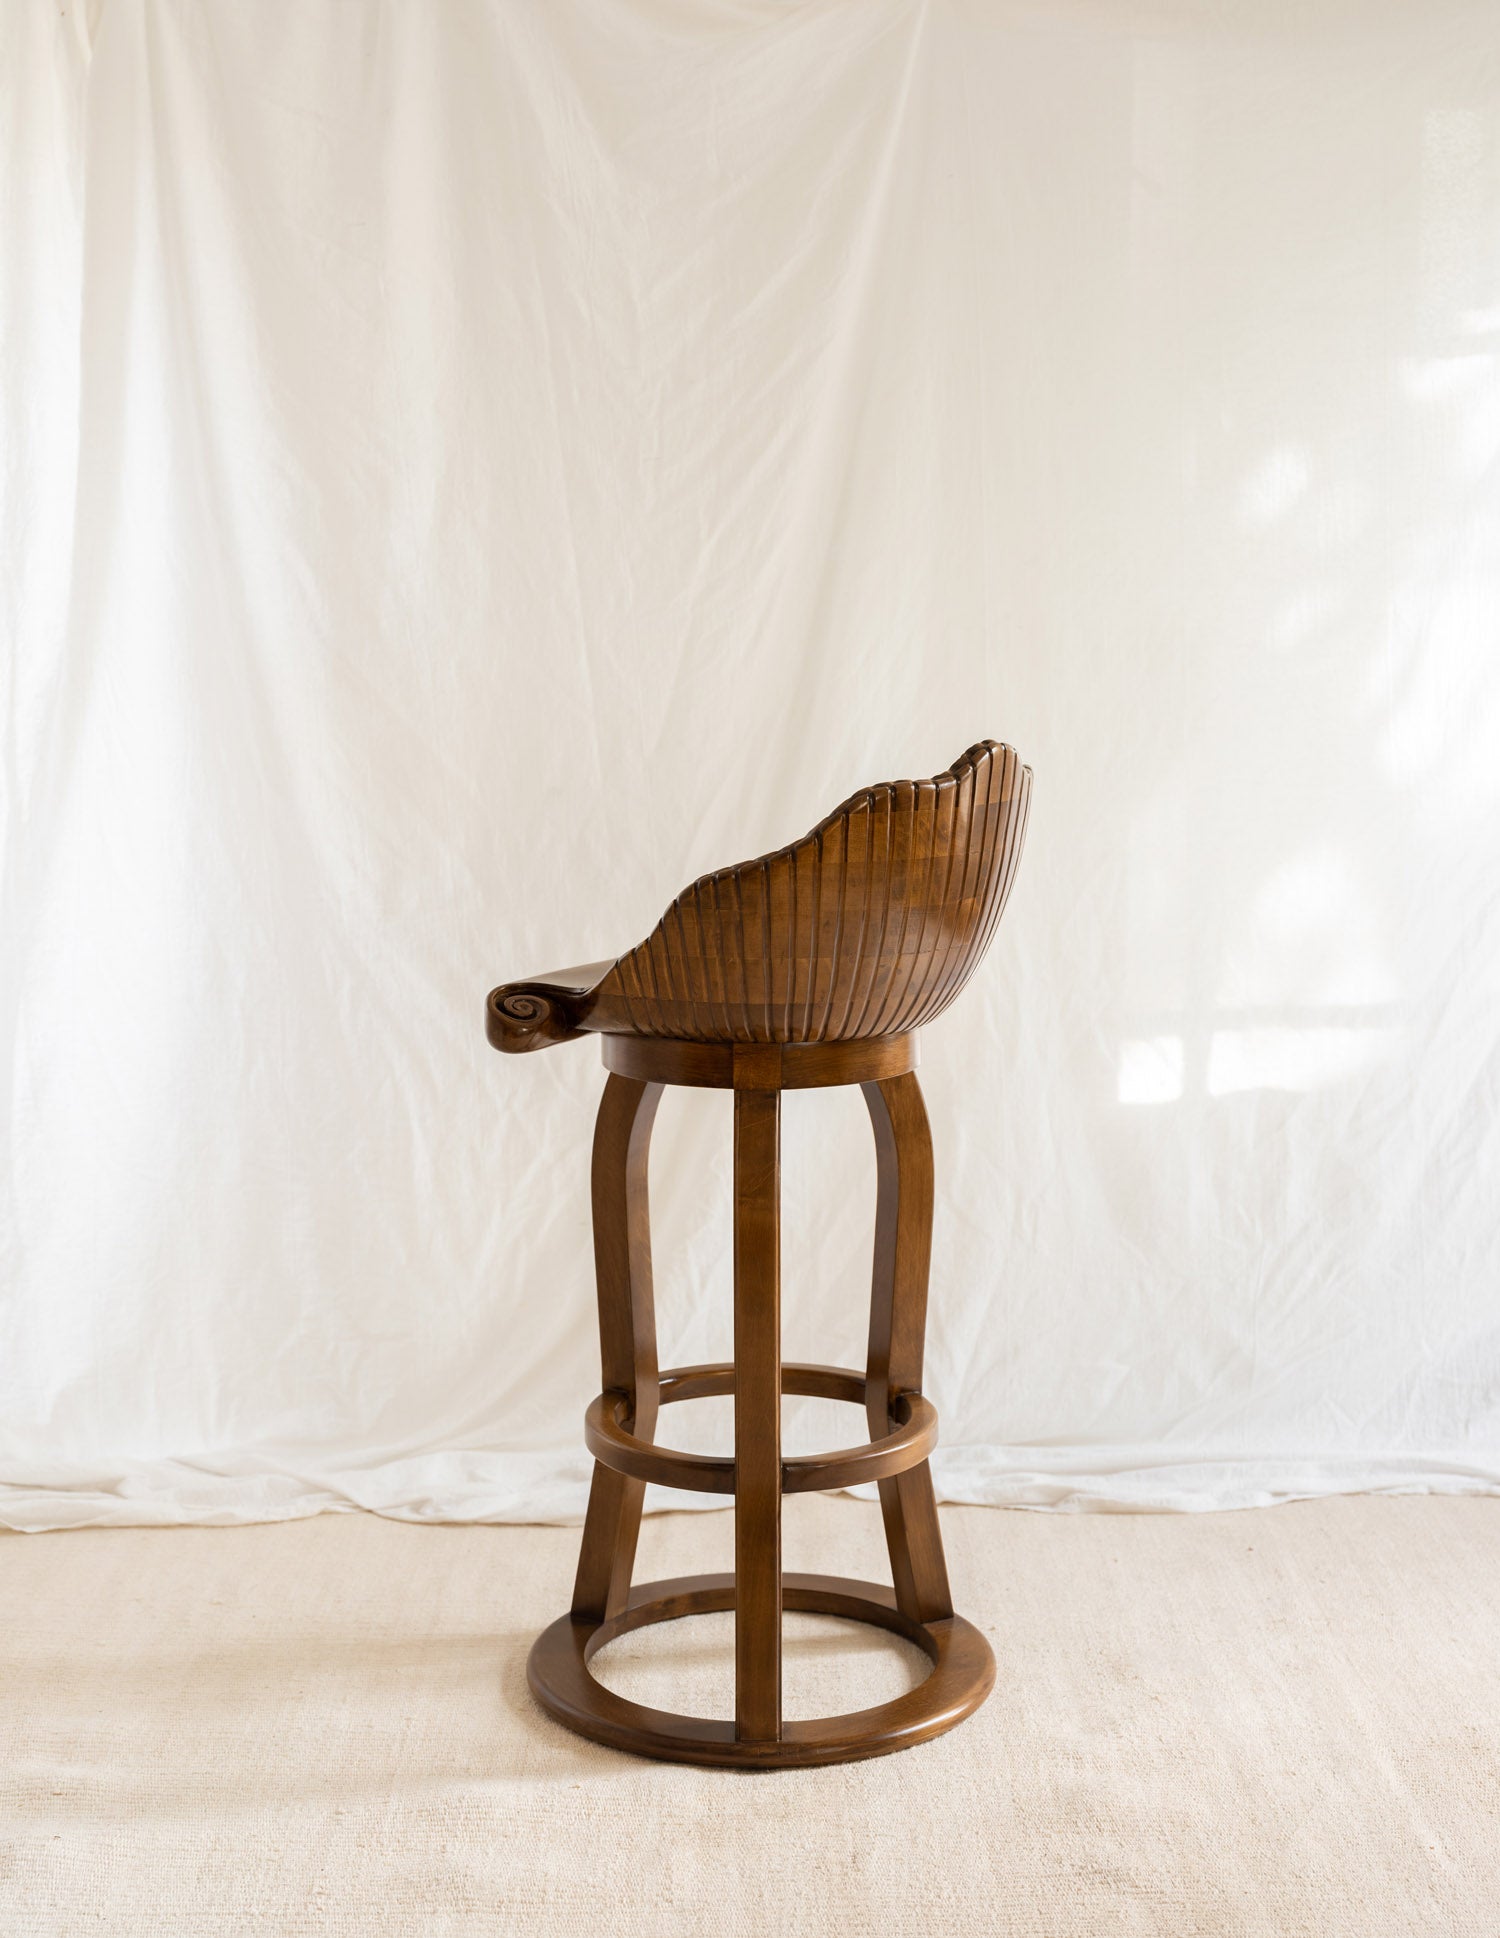 Back of stool shaped like a shell